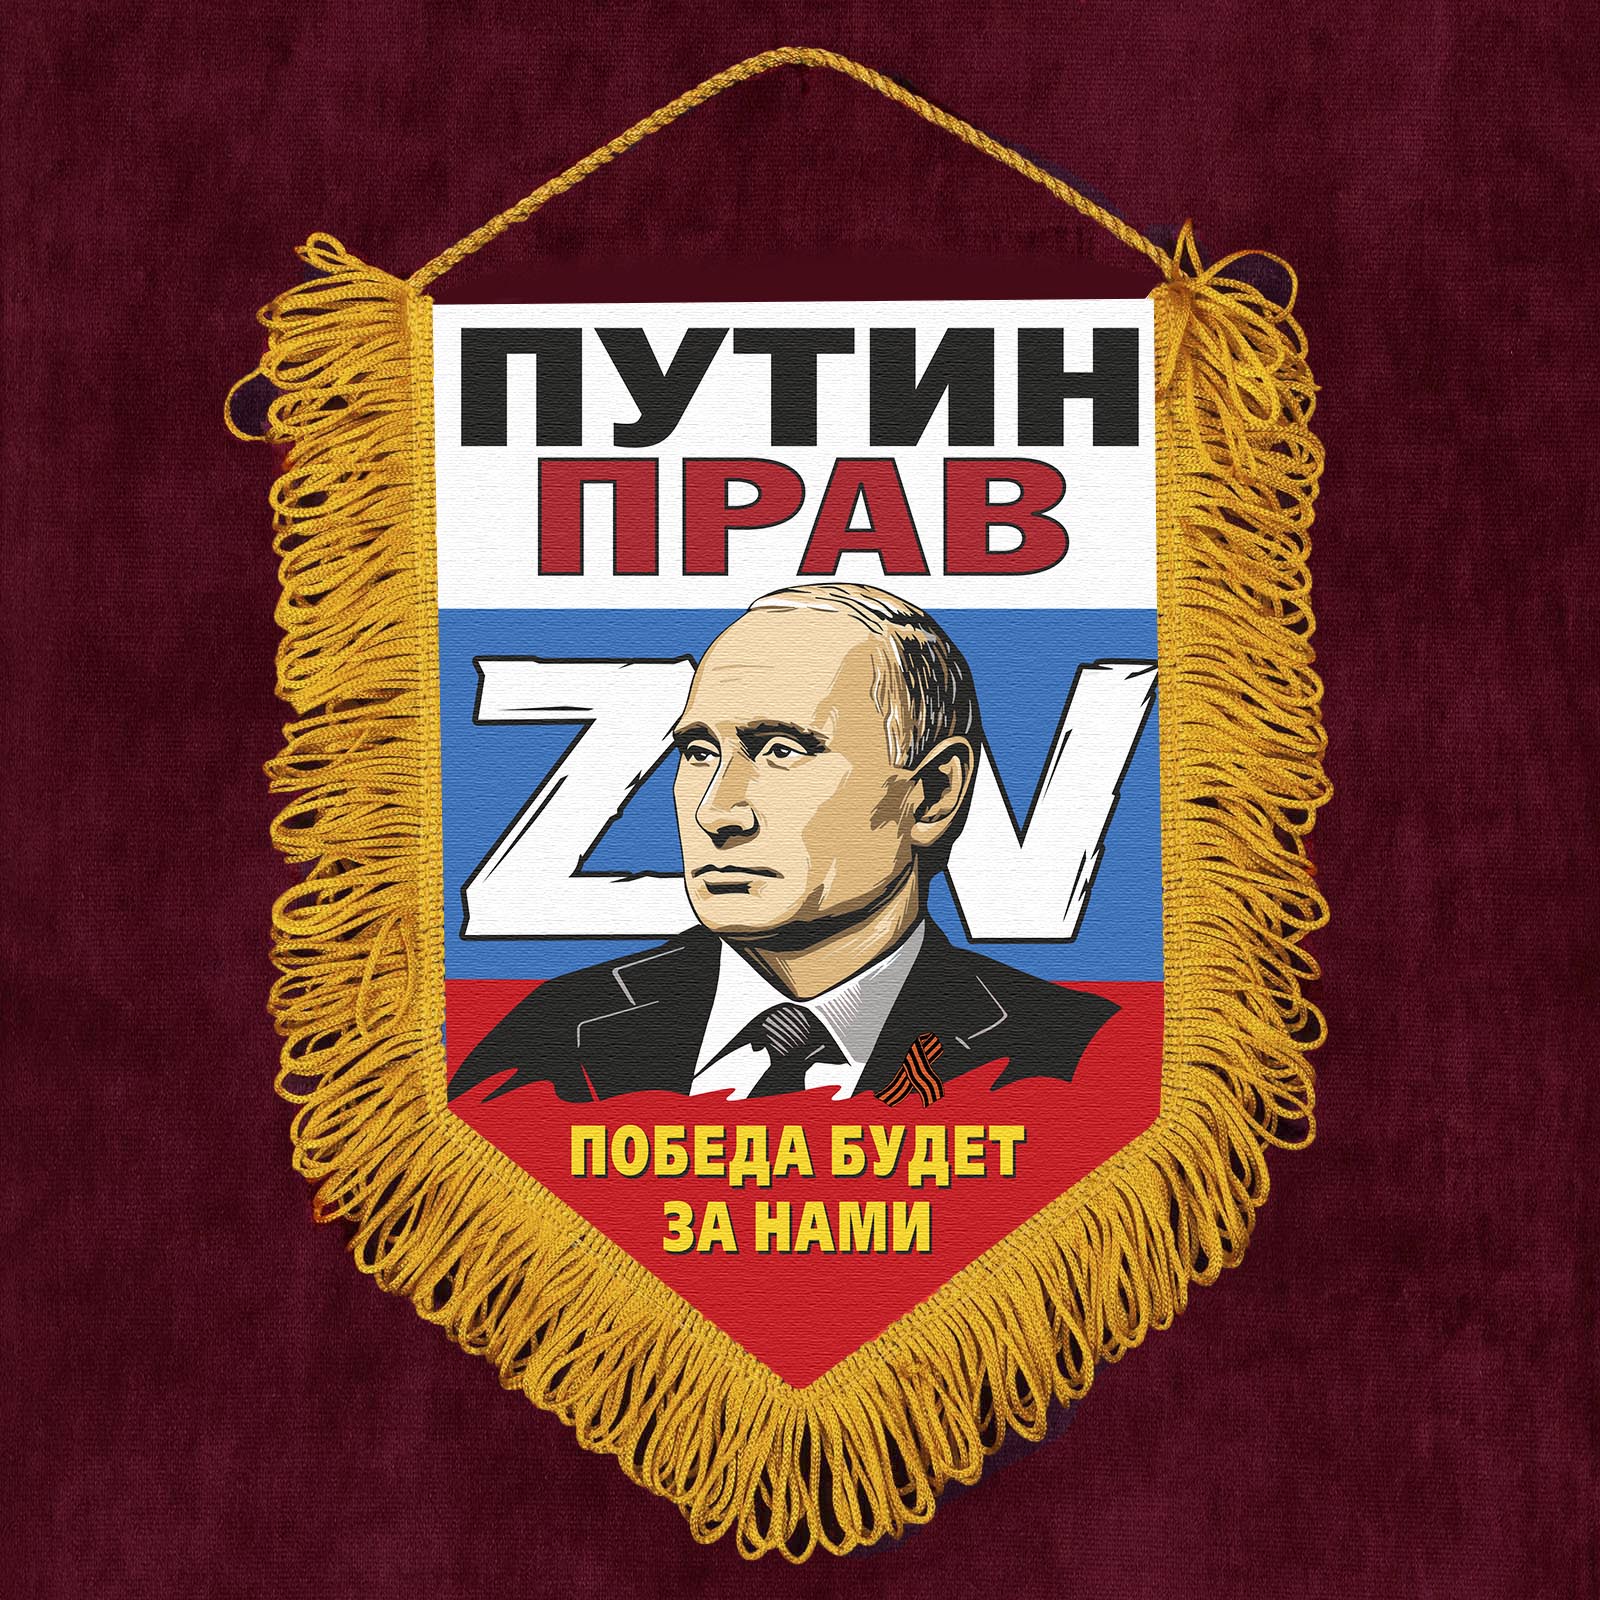 Сувенирный вымпел ZV "Путин прав"